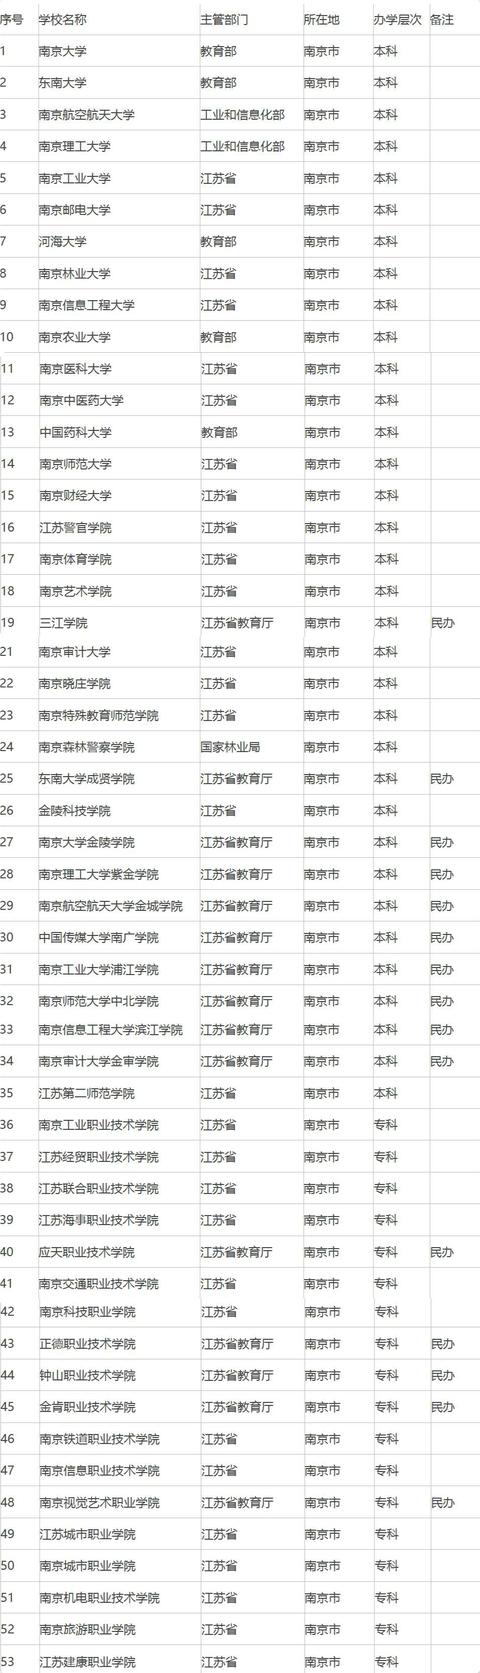 2017南京哪所大学最好？这里有南京全部53所大学详细排名